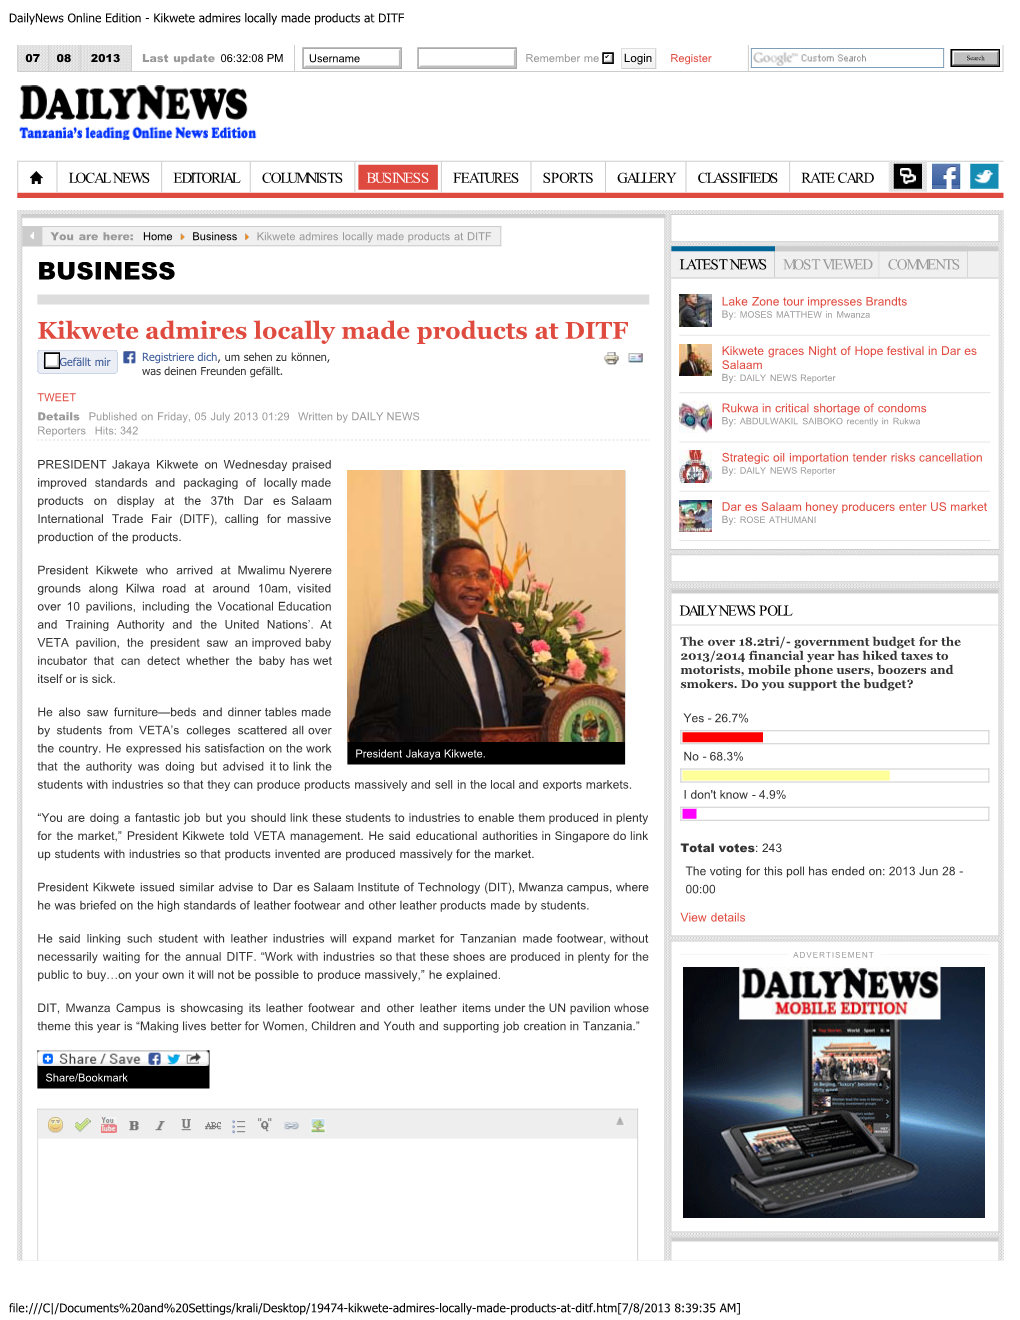 Kikwete Admires Locally Made Products at DITF